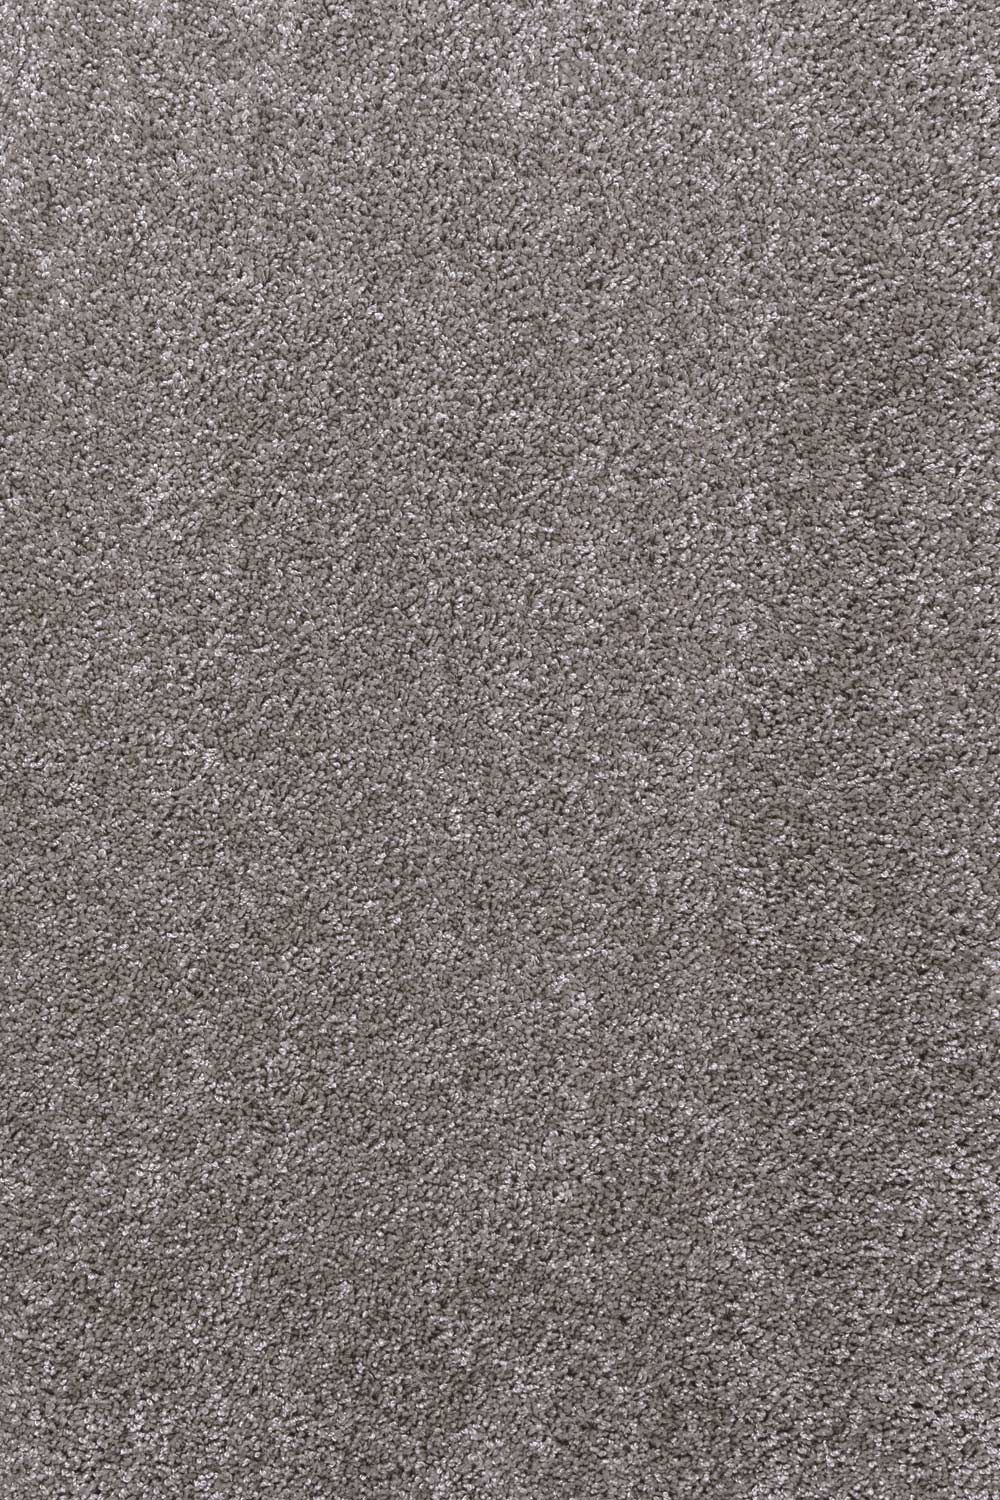 Metrážny koberec Wellington 72 400 cm